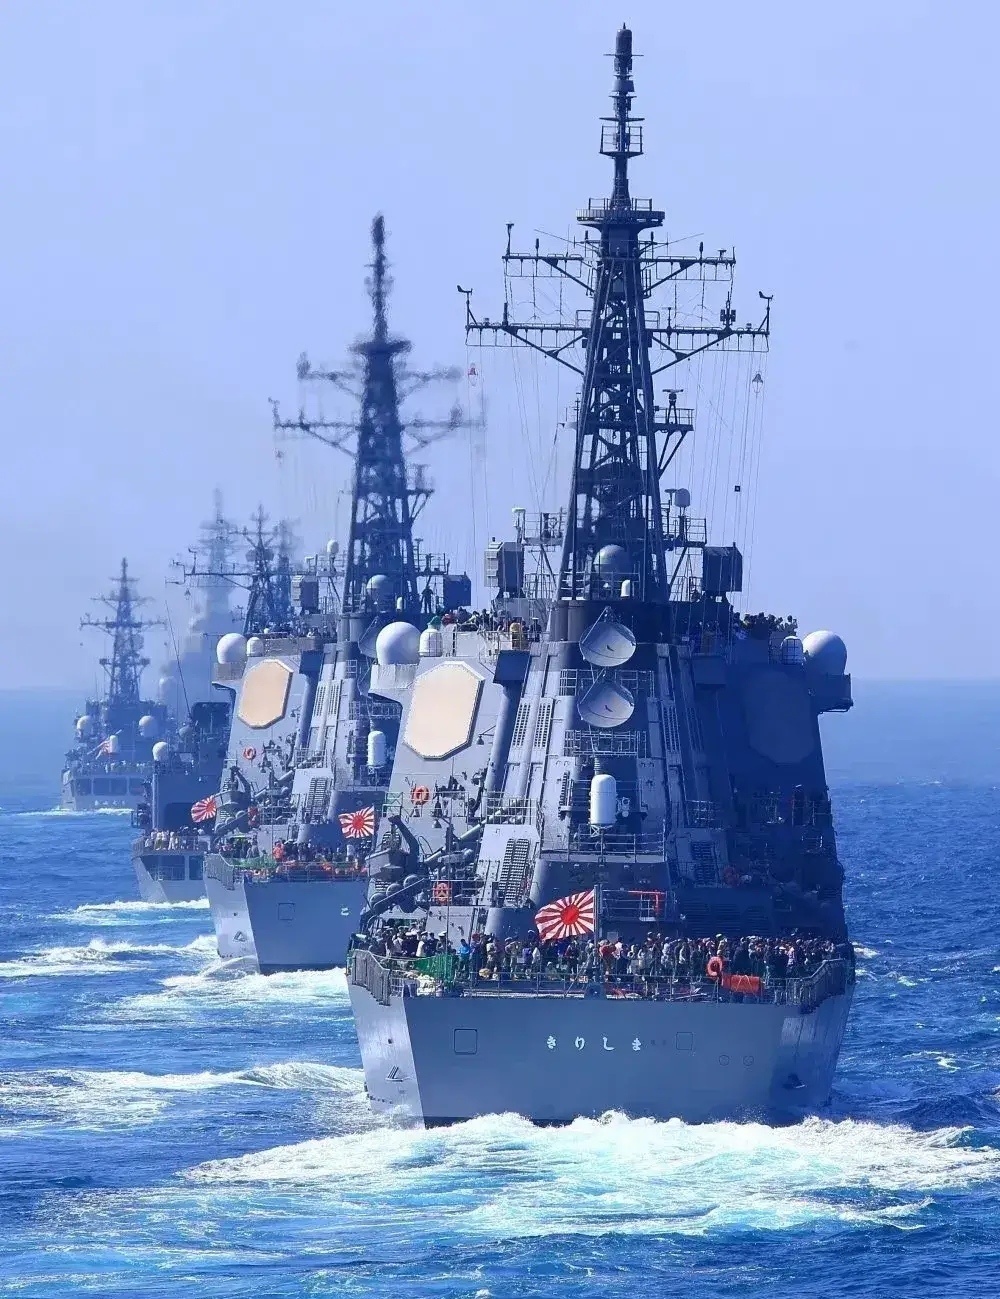 从八八舰队到十十舰队,在中国海军面前越来越弱的日本海上自卫队